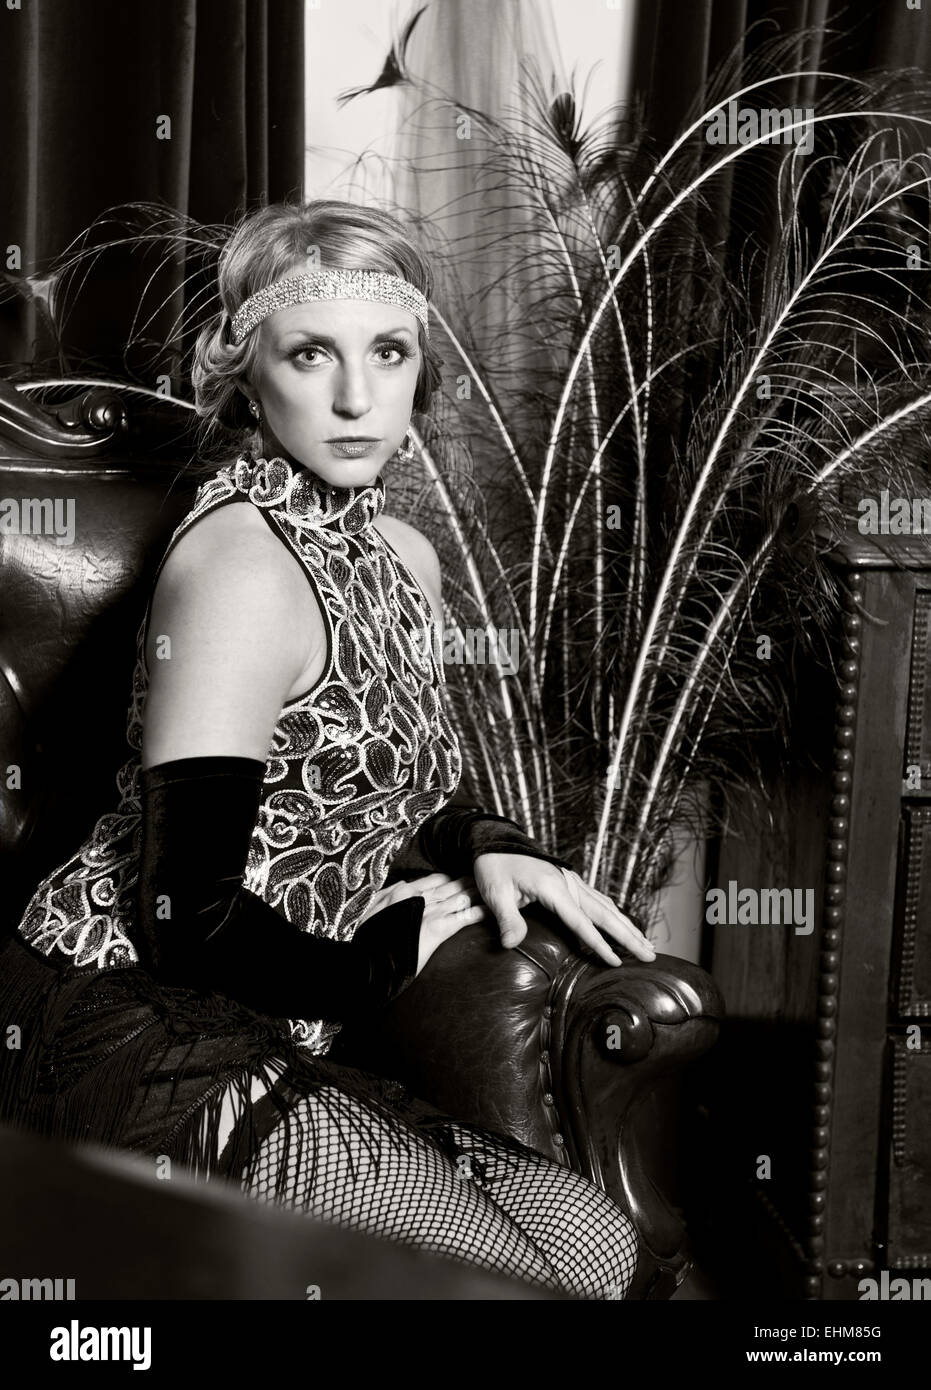 Le portrait d'une femme vêtue de Vintage 1920's flapper style clothing en noir et blanc Banque D'Images